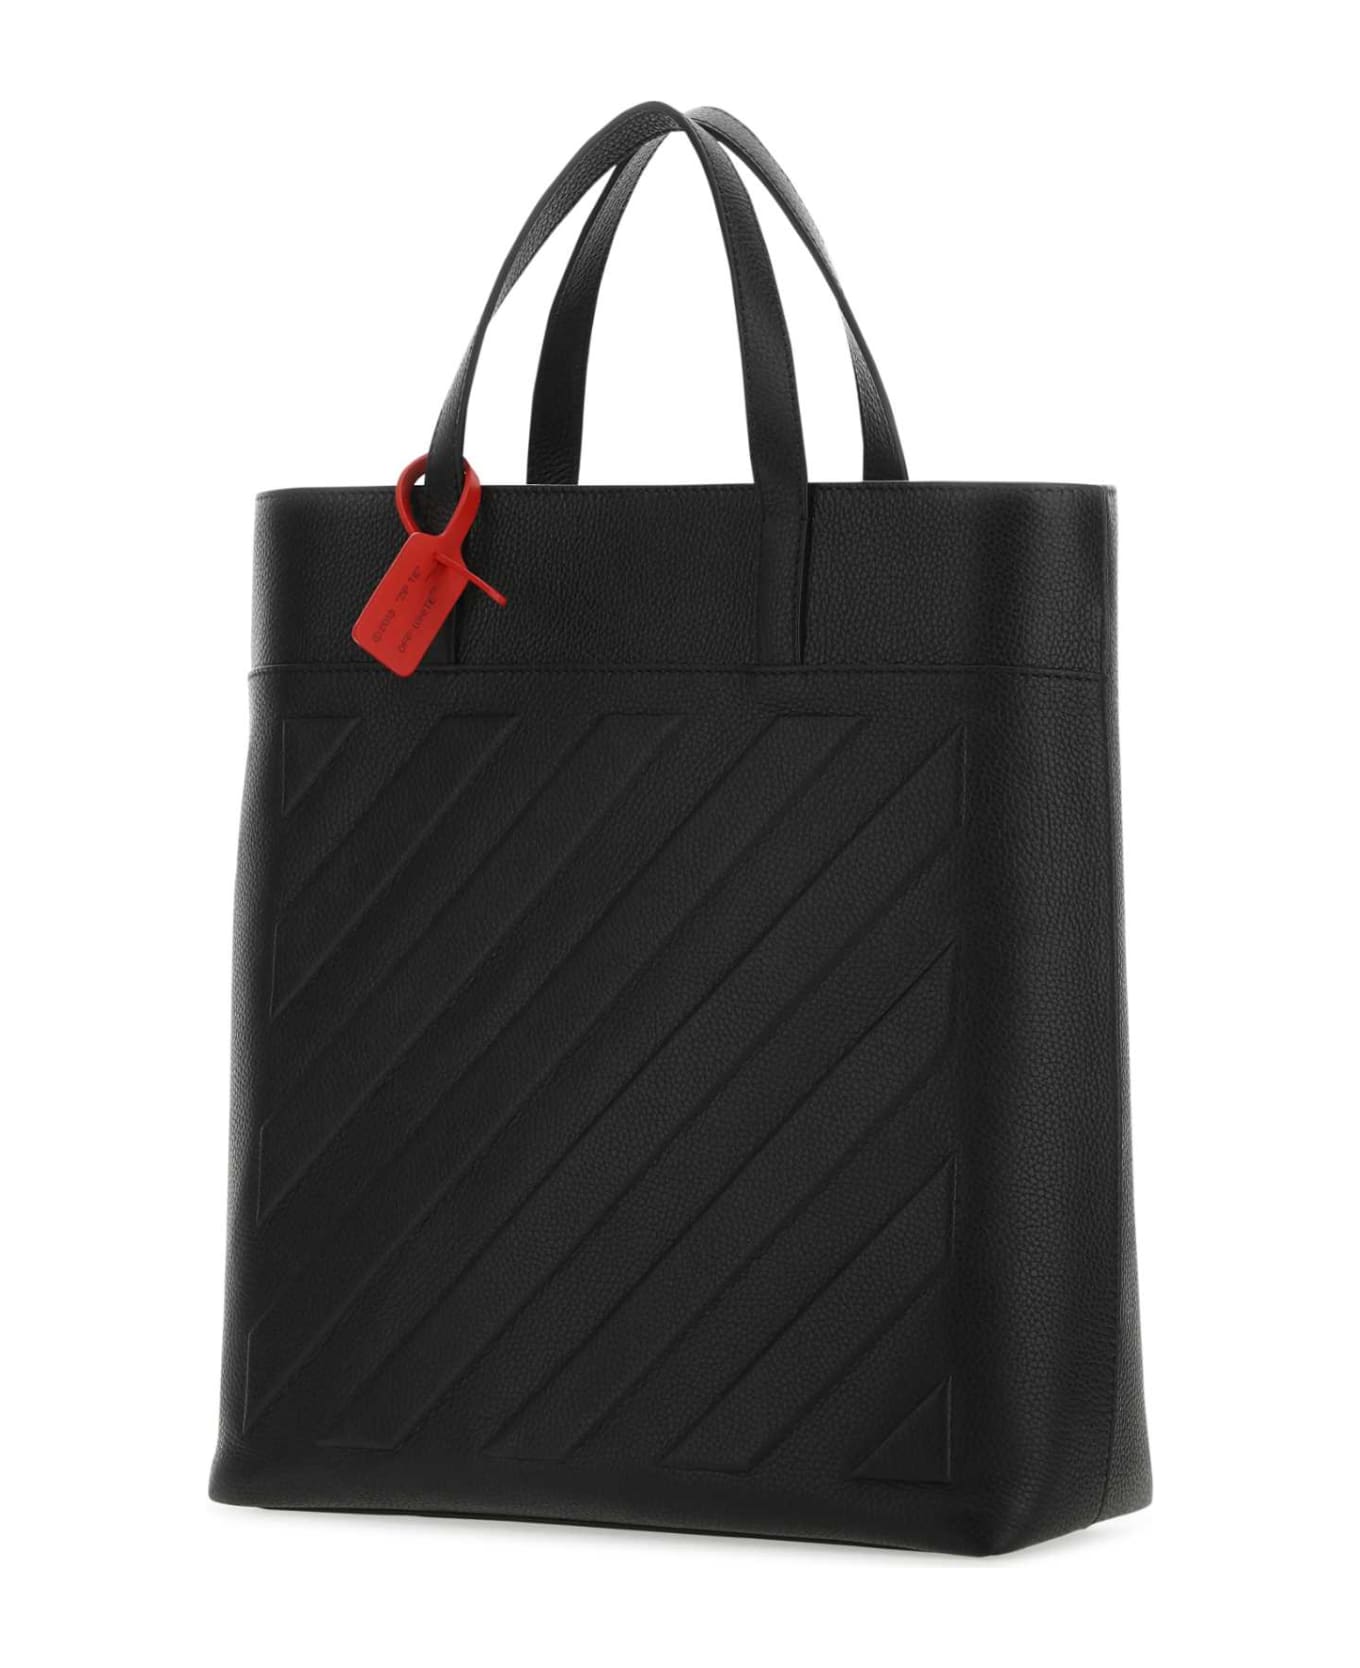 Off-White Black Leather Binder Shopping Bag - BLACKNOCOLOR